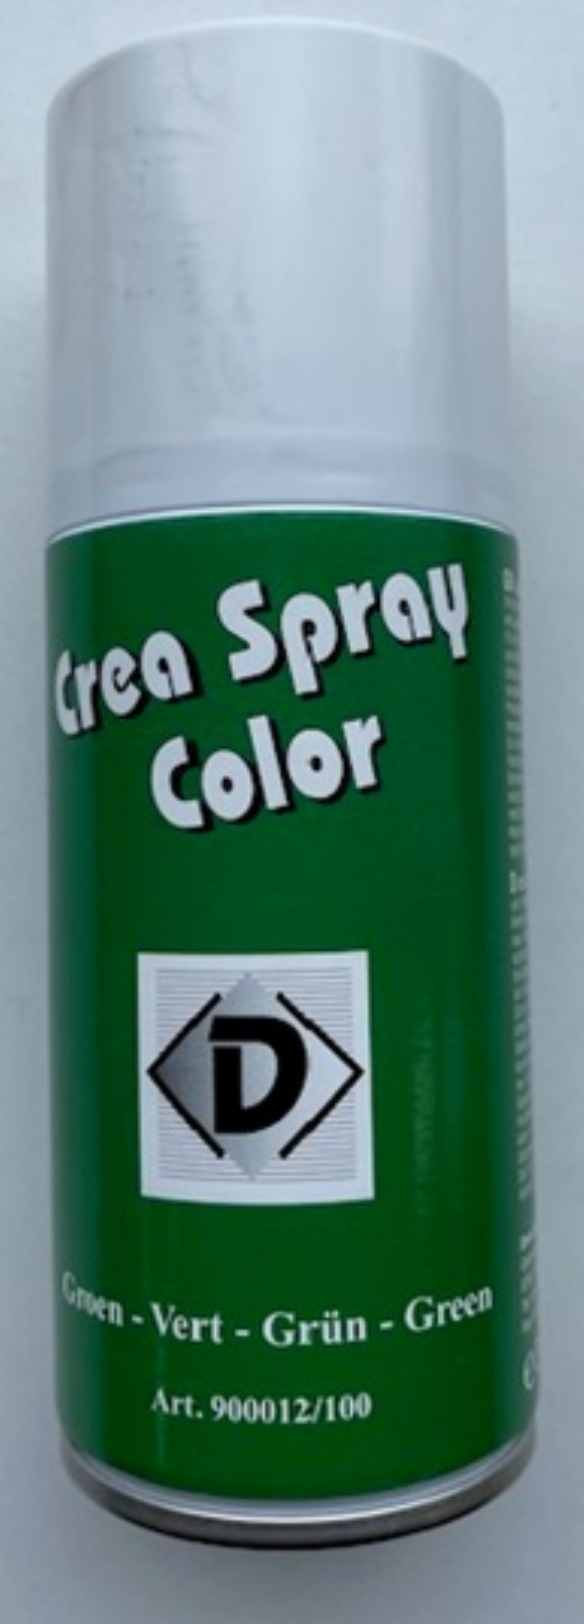 OUTLET Crea spray color, 150 ml, groen kopen?